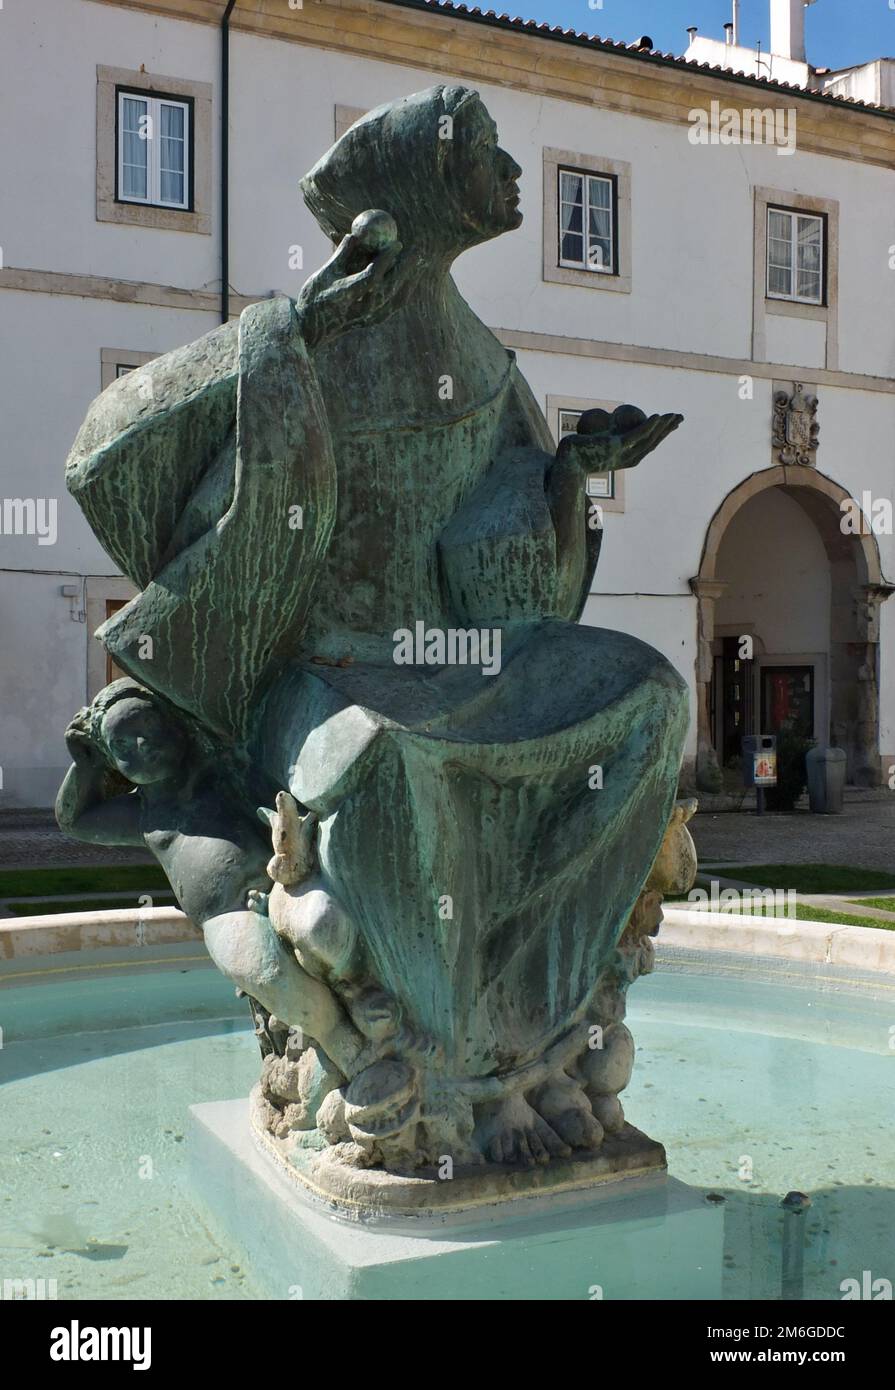 Fountain with bronze statue in Alcobaca, Centro - Portugal Stock Photo